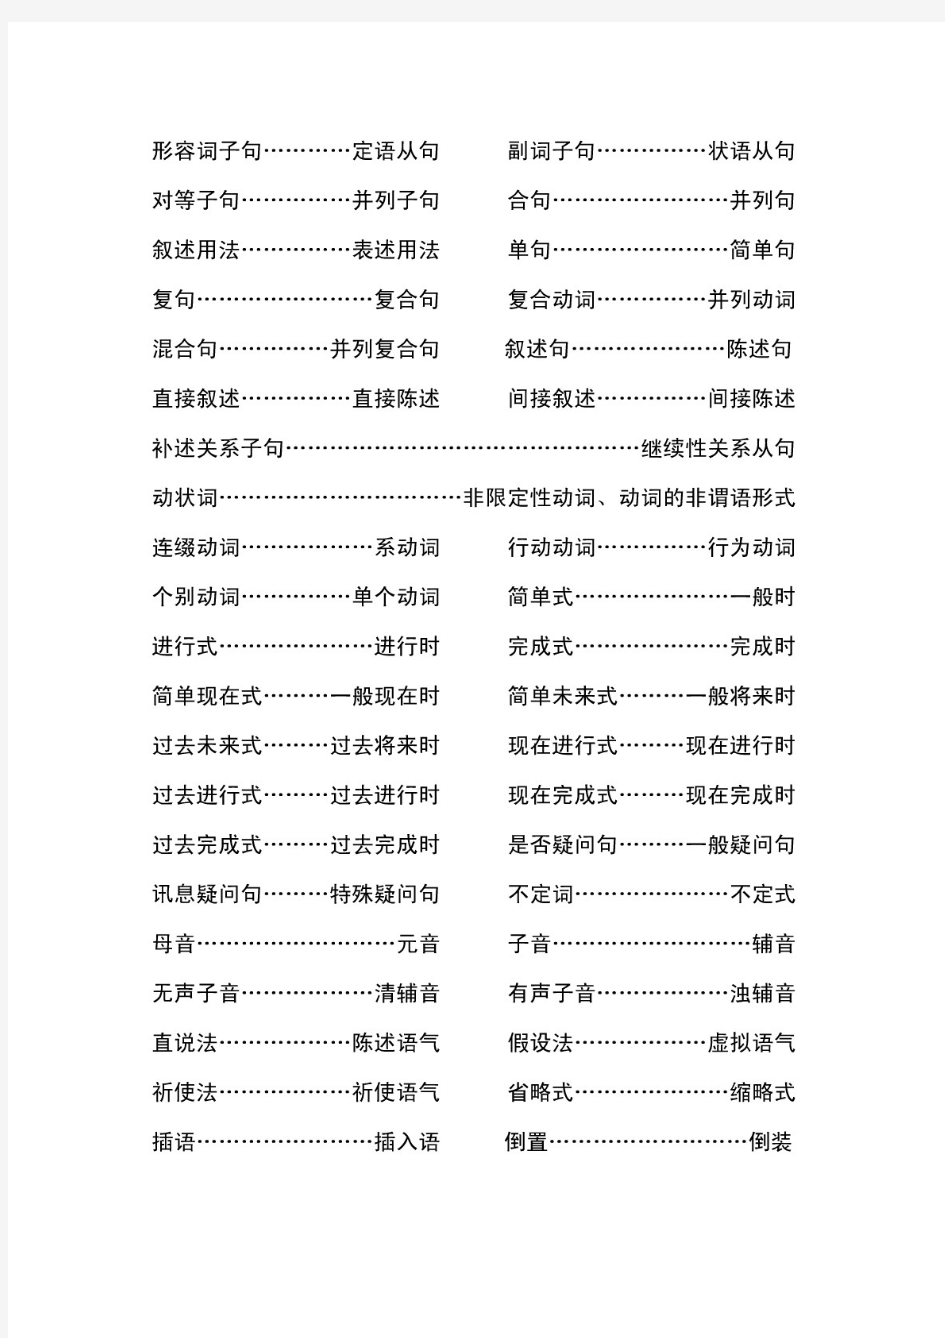 中国大陆与台湾省英语语法术语对照表